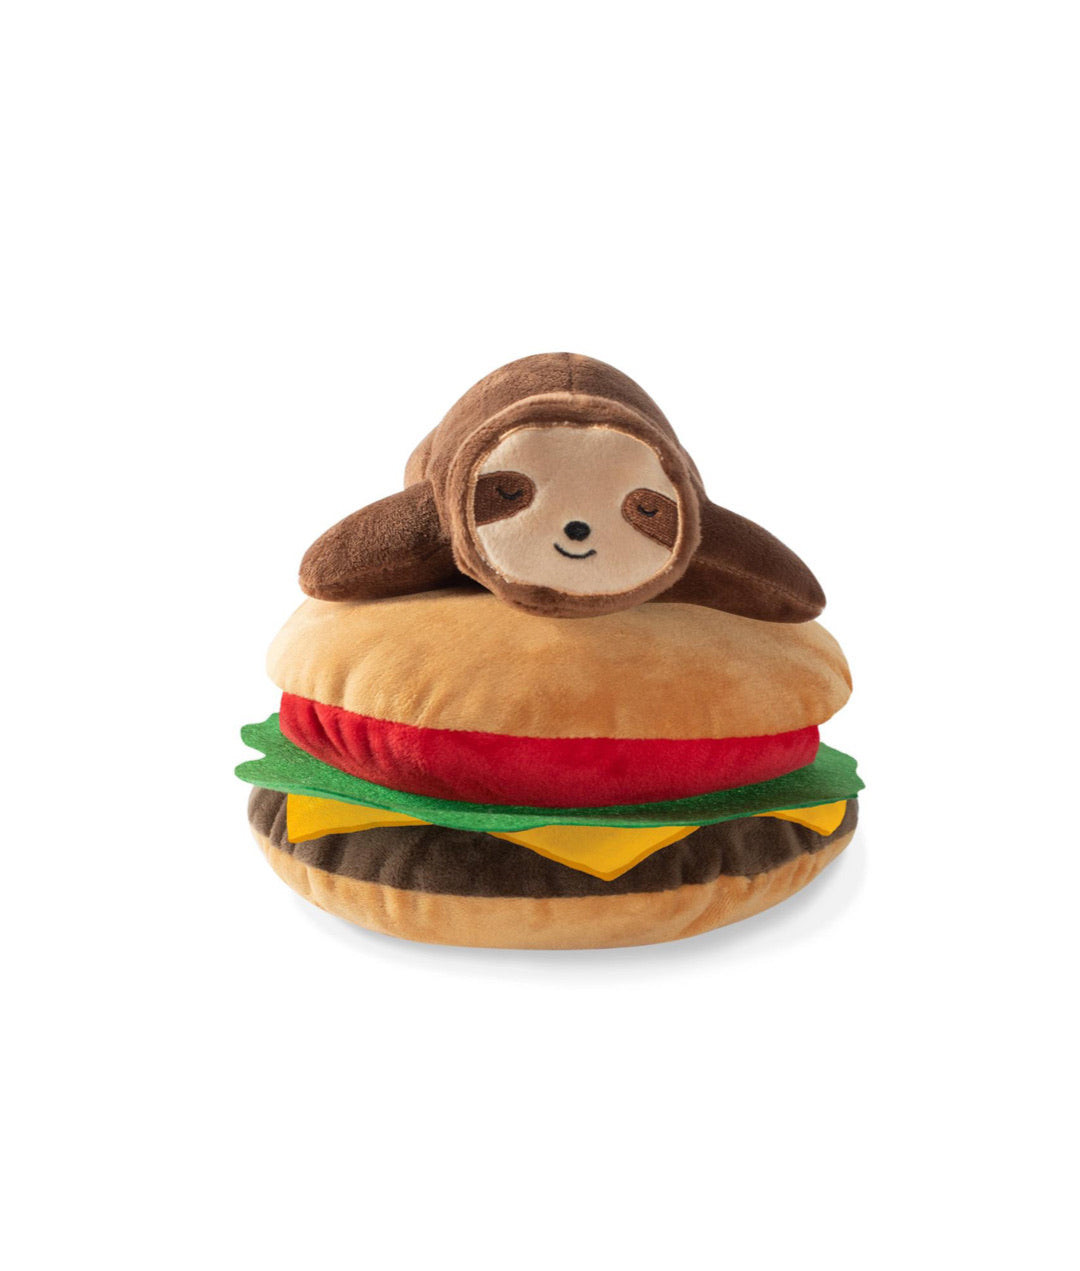 Fringe Studio Toy Box Sloth On A Hamburger Squeaky Plush Toy